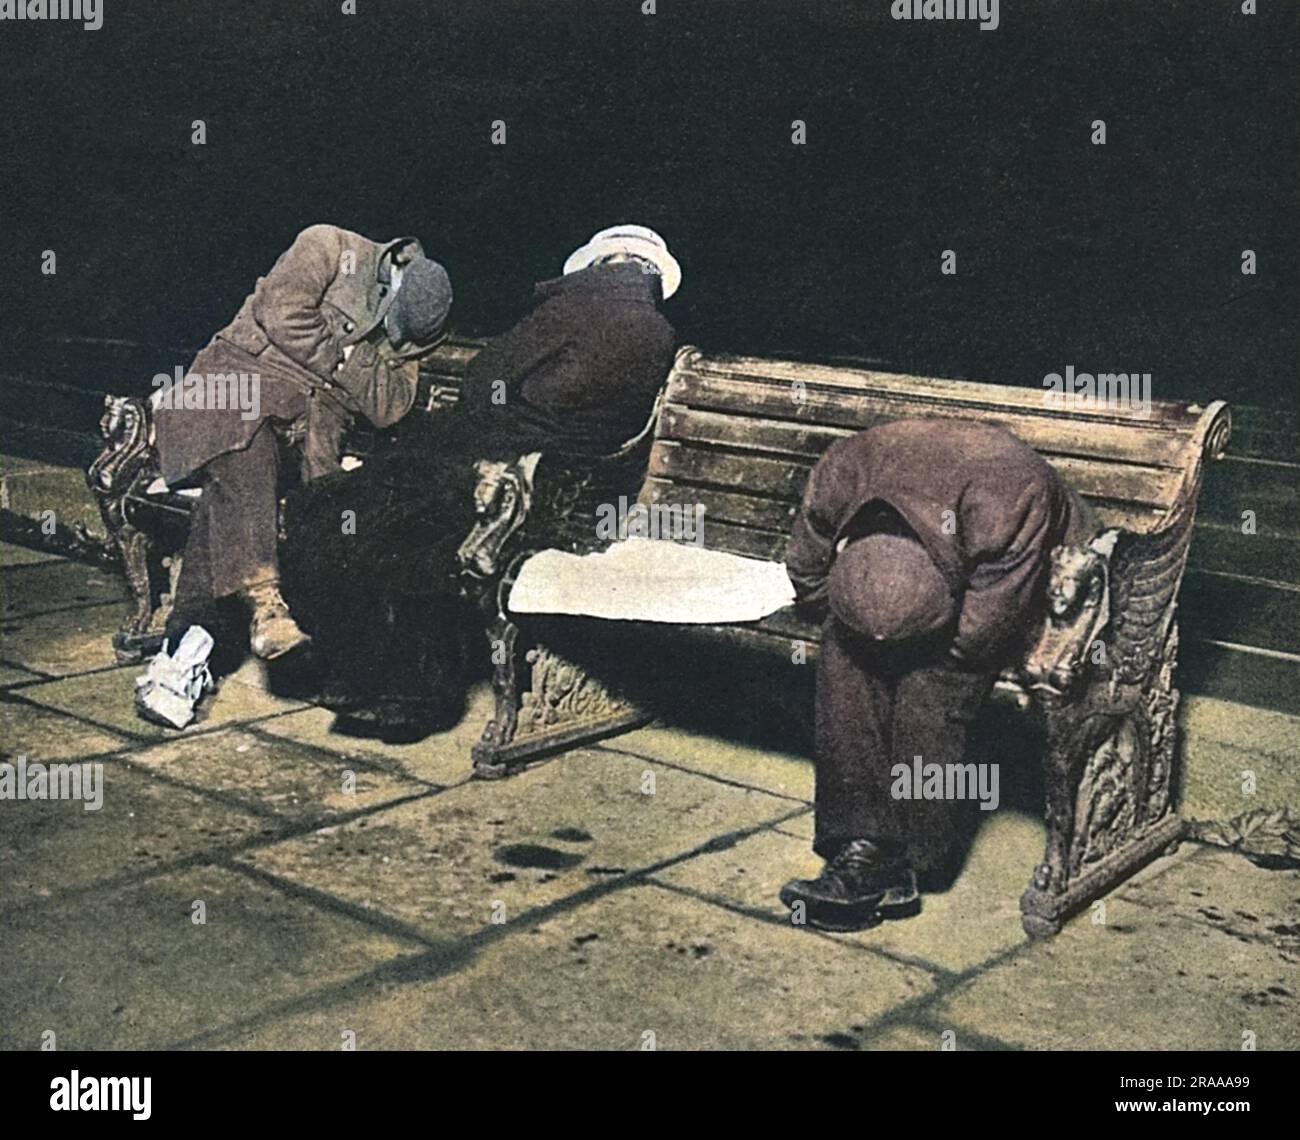 Männer, die nicht in einen Nachtschrank kommen konnten, schlafen auf einer Bank am Ufer in London. Eine Taschenlampe zeigt ihre Schlafformen, die in unangenehmen Winkeln gebogen sind, um Ruhe zu finden. Datum: 1910 Stockfoto